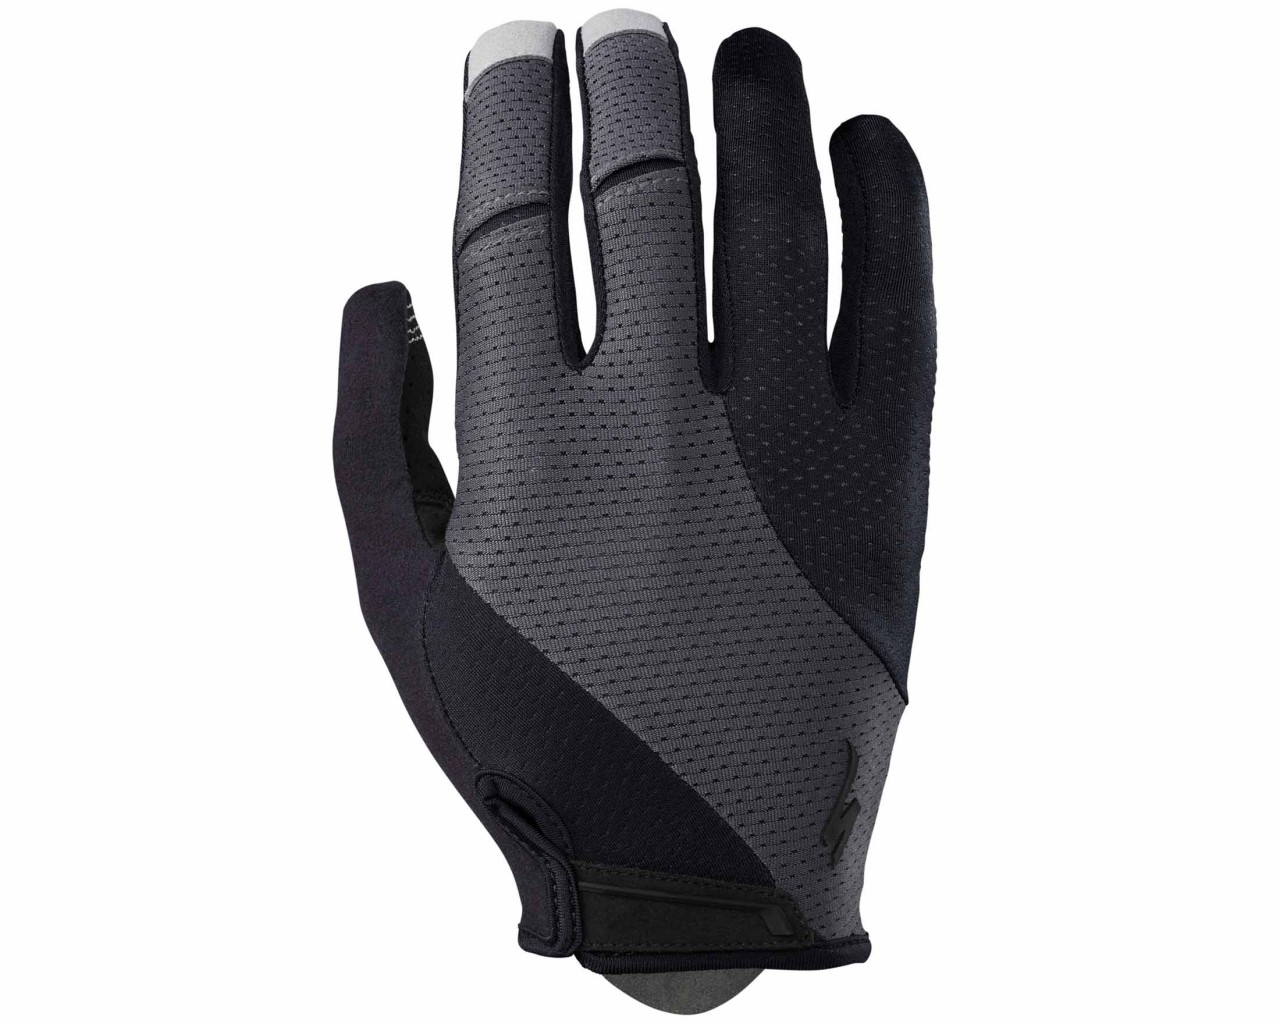 Specialized BG Gel langfinger Handschuhe | black-carbon grey